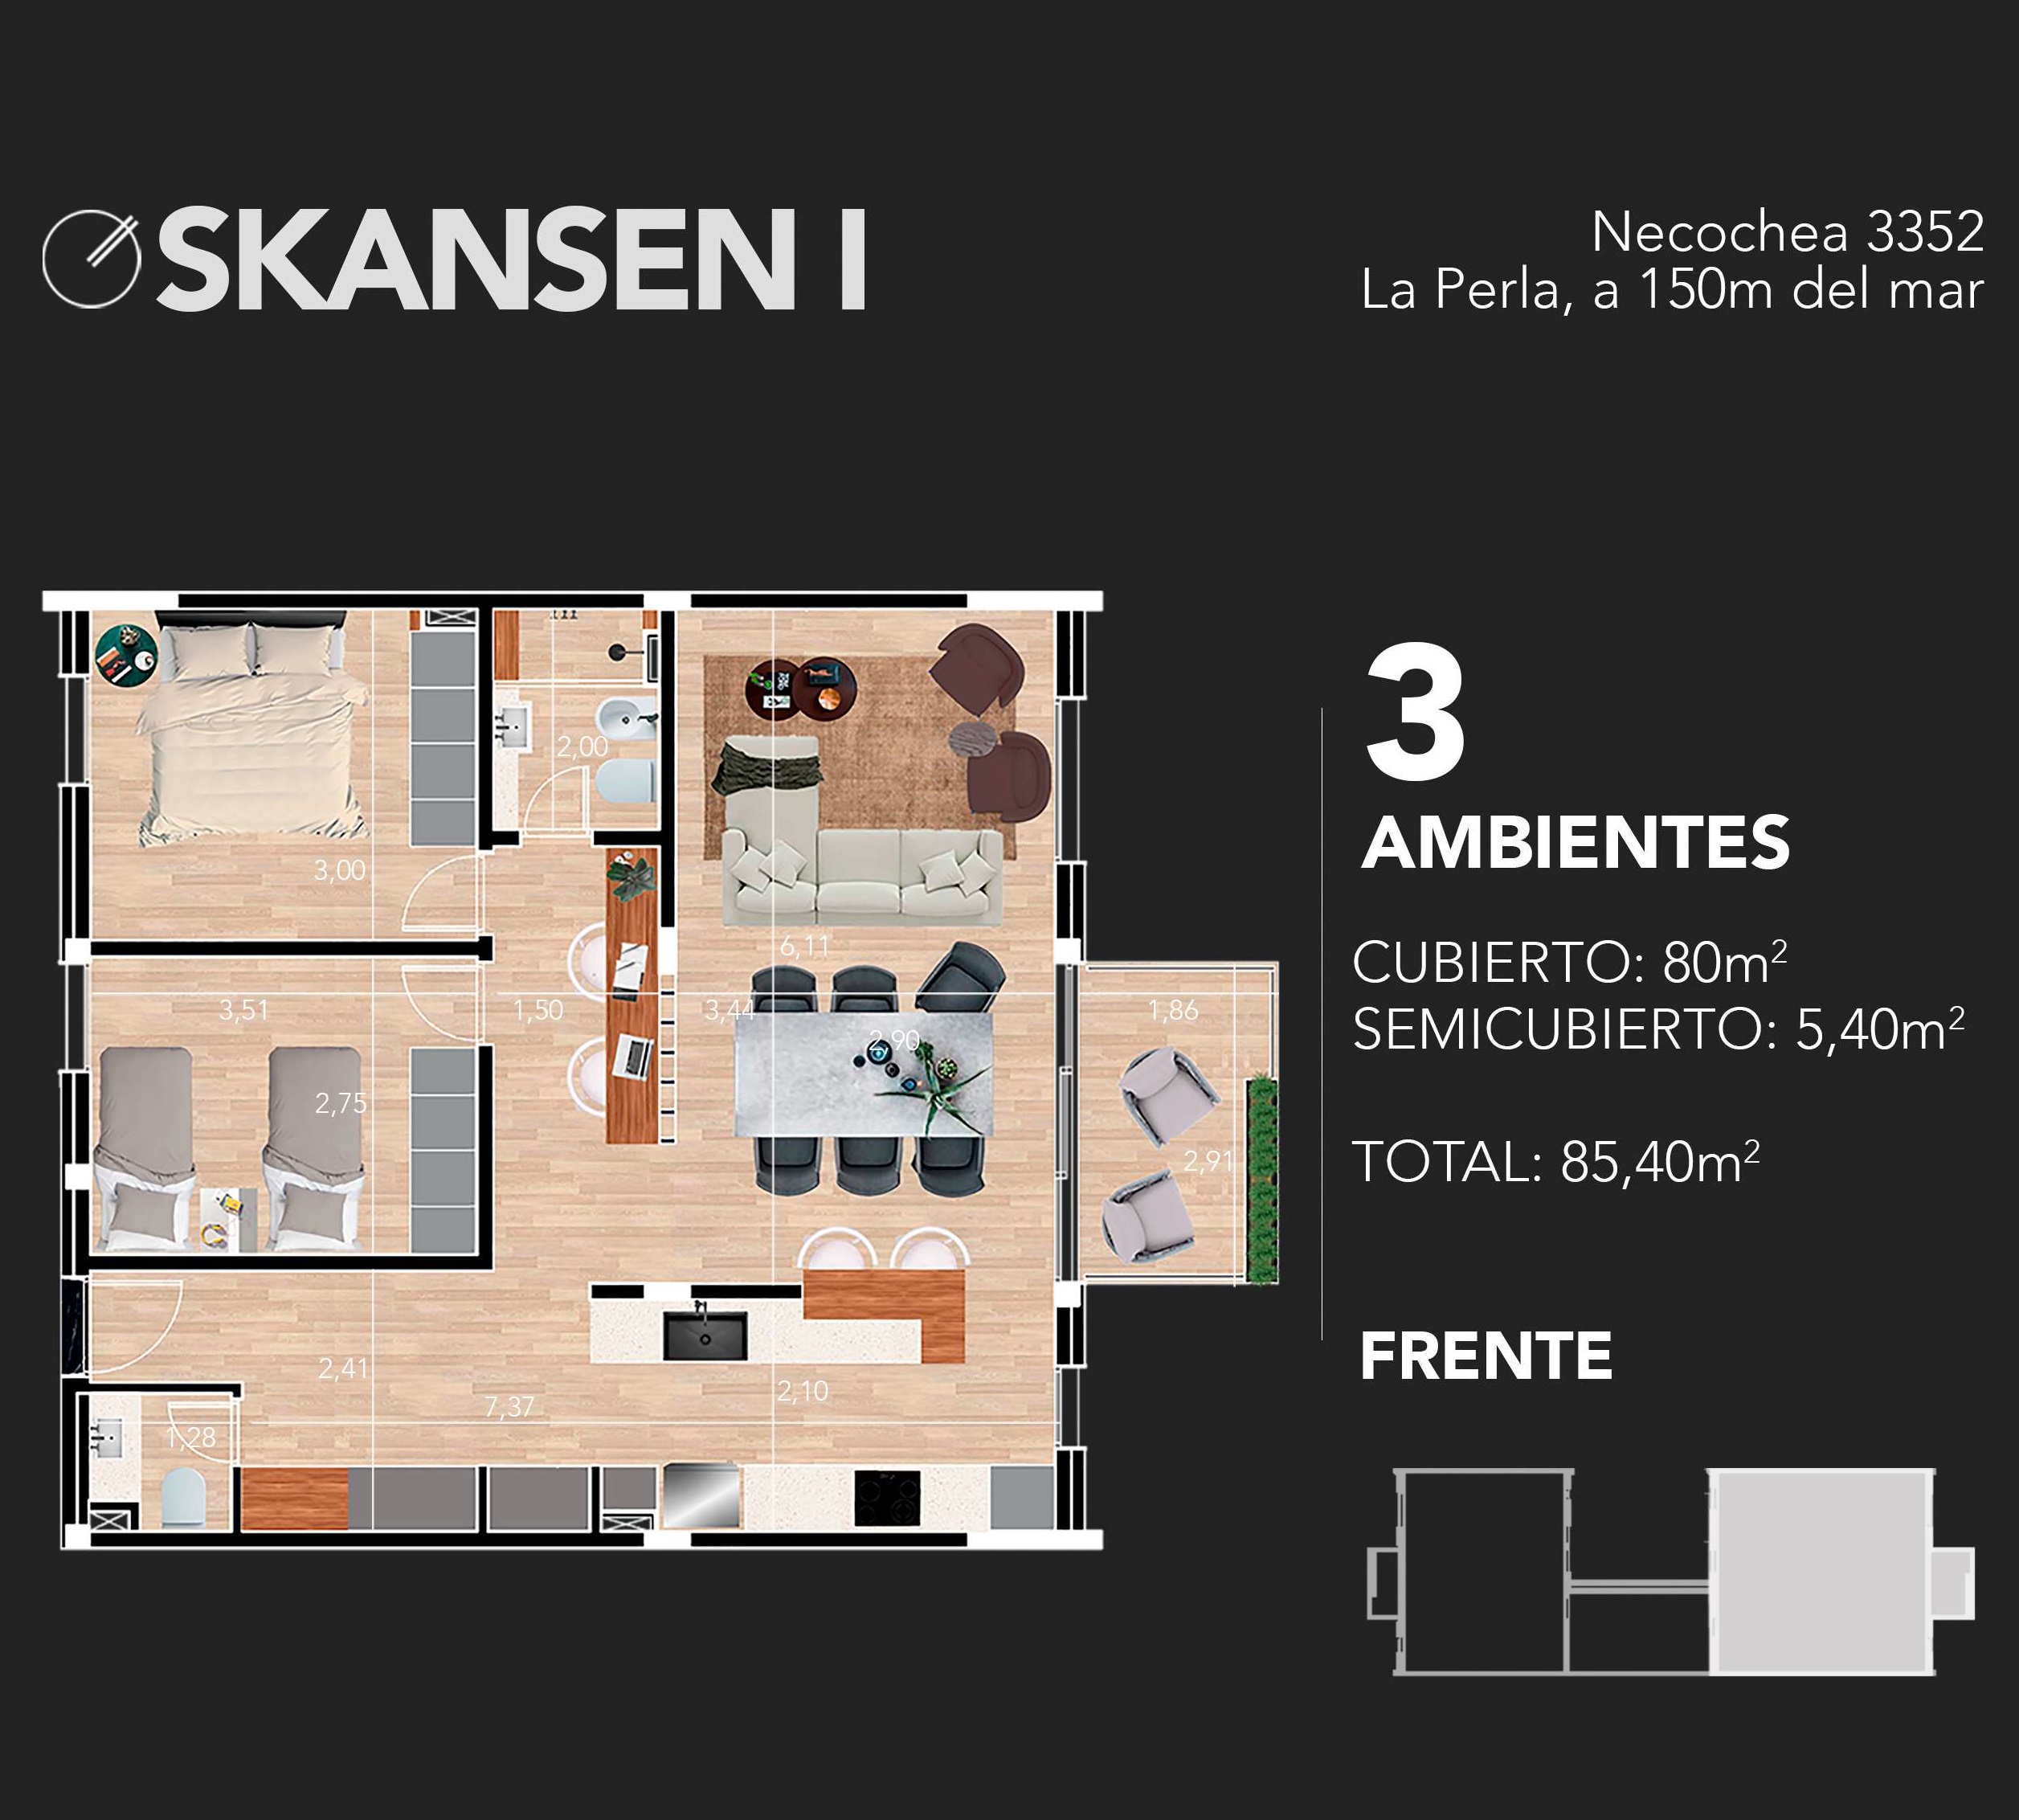 Venta en Pozo departamentos de 3 ambientes con cocheras opcional.  Edificio Skansen I La Perla 